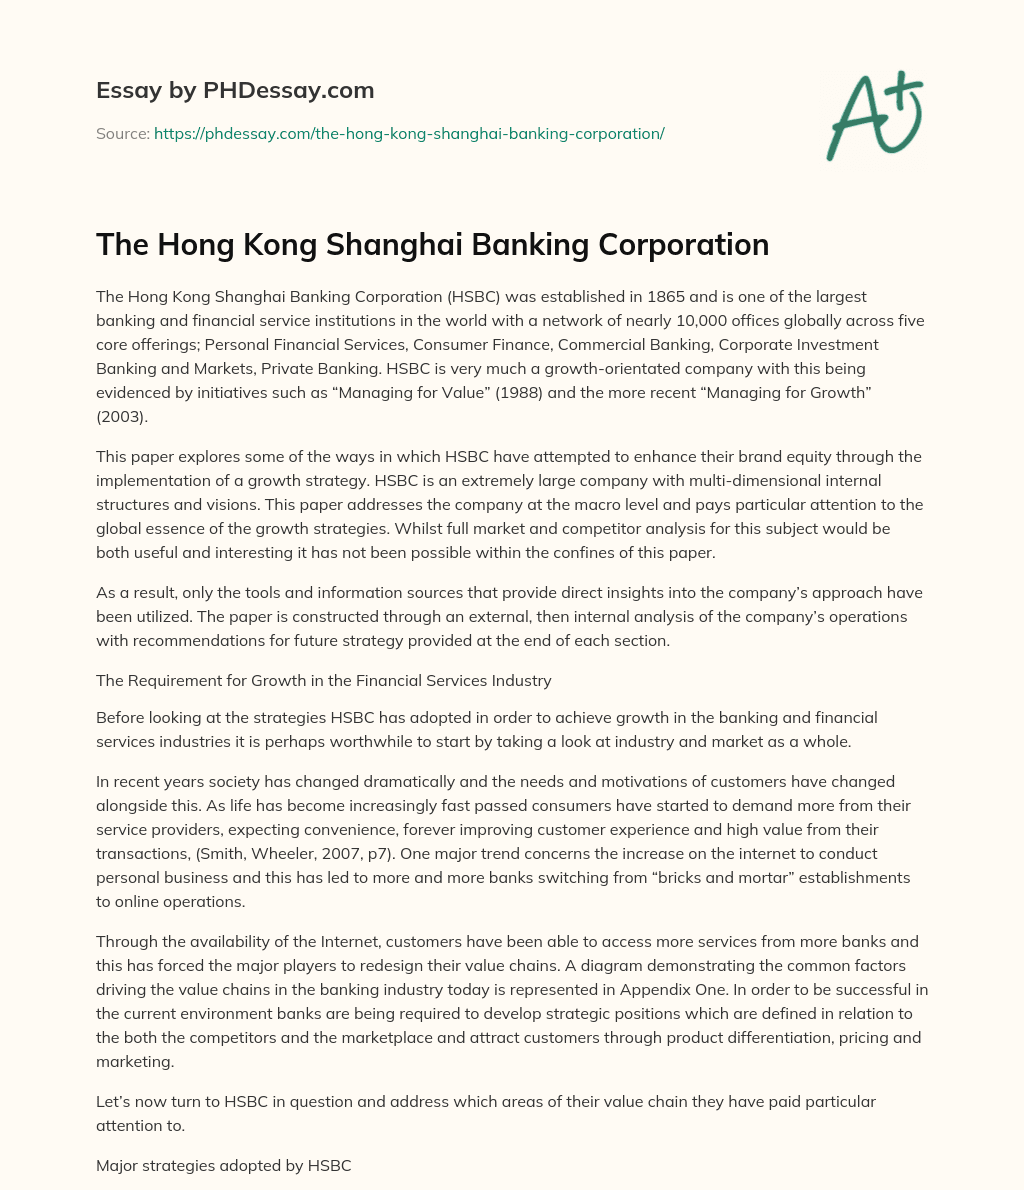 The Hong Kong Shanghai Banking Corporation essay